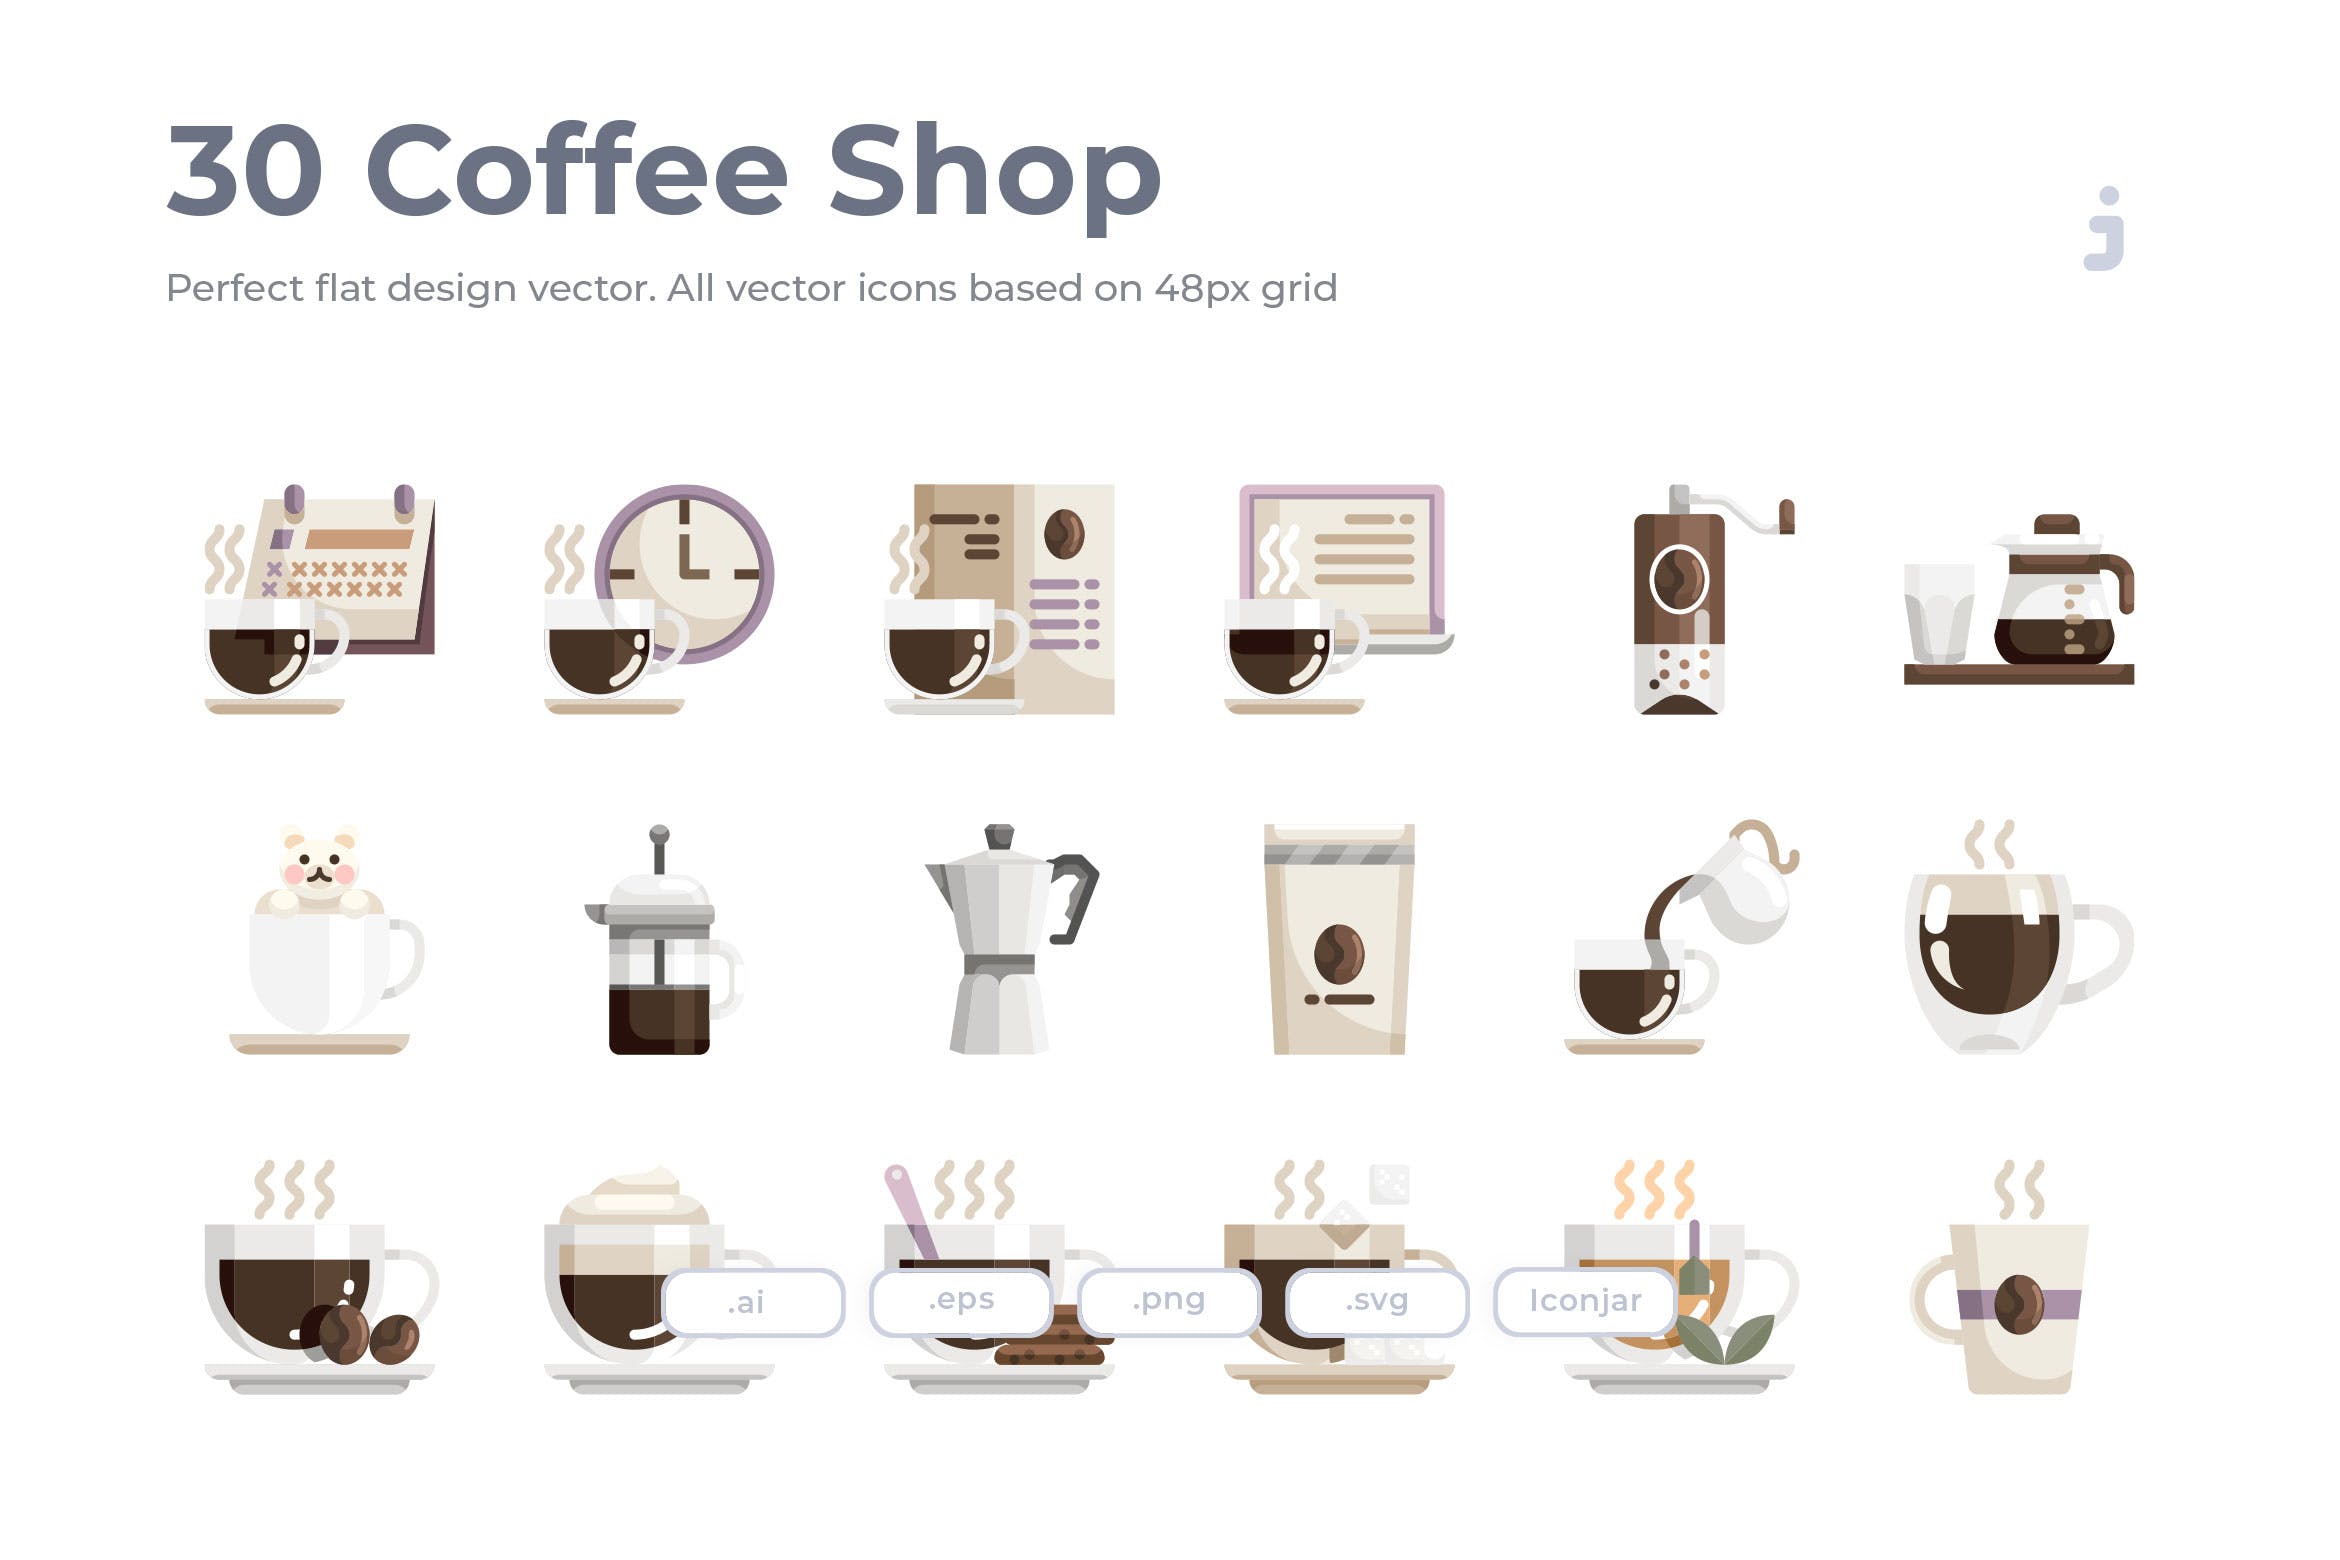 30枚咖啡/咖啡店扁平设计风格矢量第一素材精选图标素材 30 Coffee Shop Icons – Flat插图